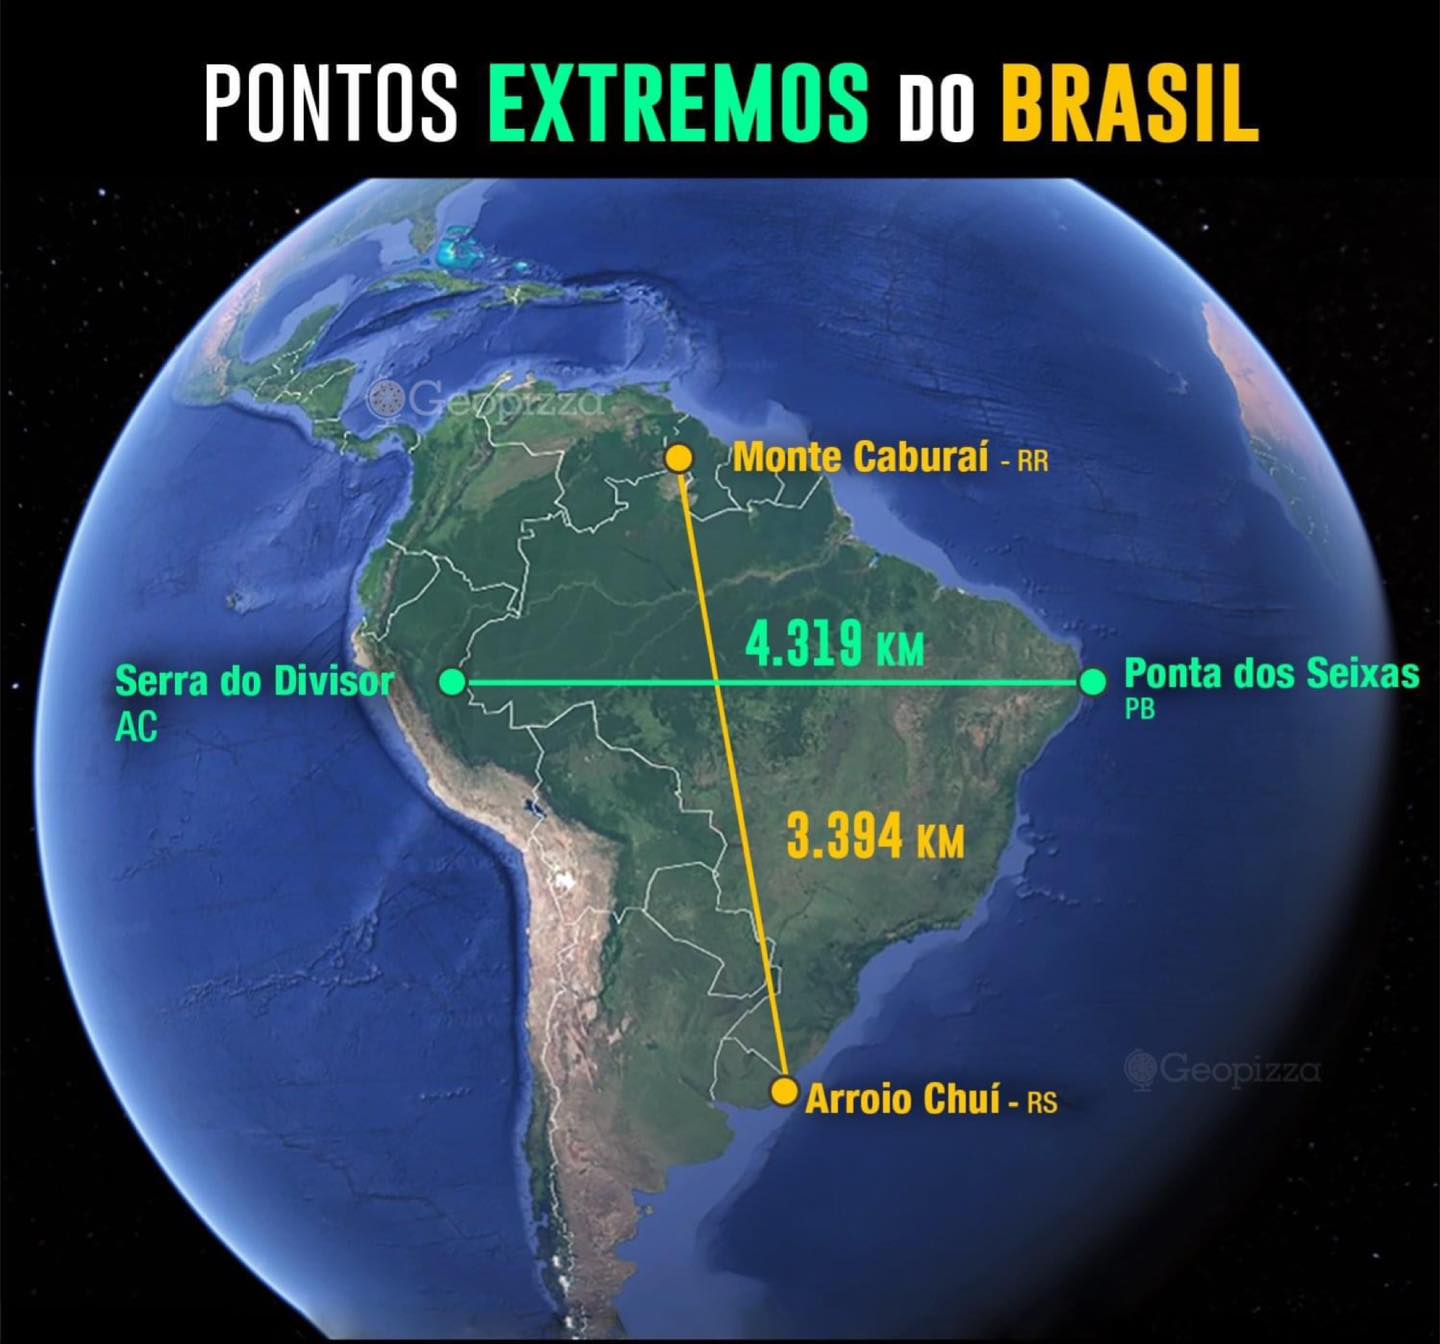 Pontos extremos do Brasil